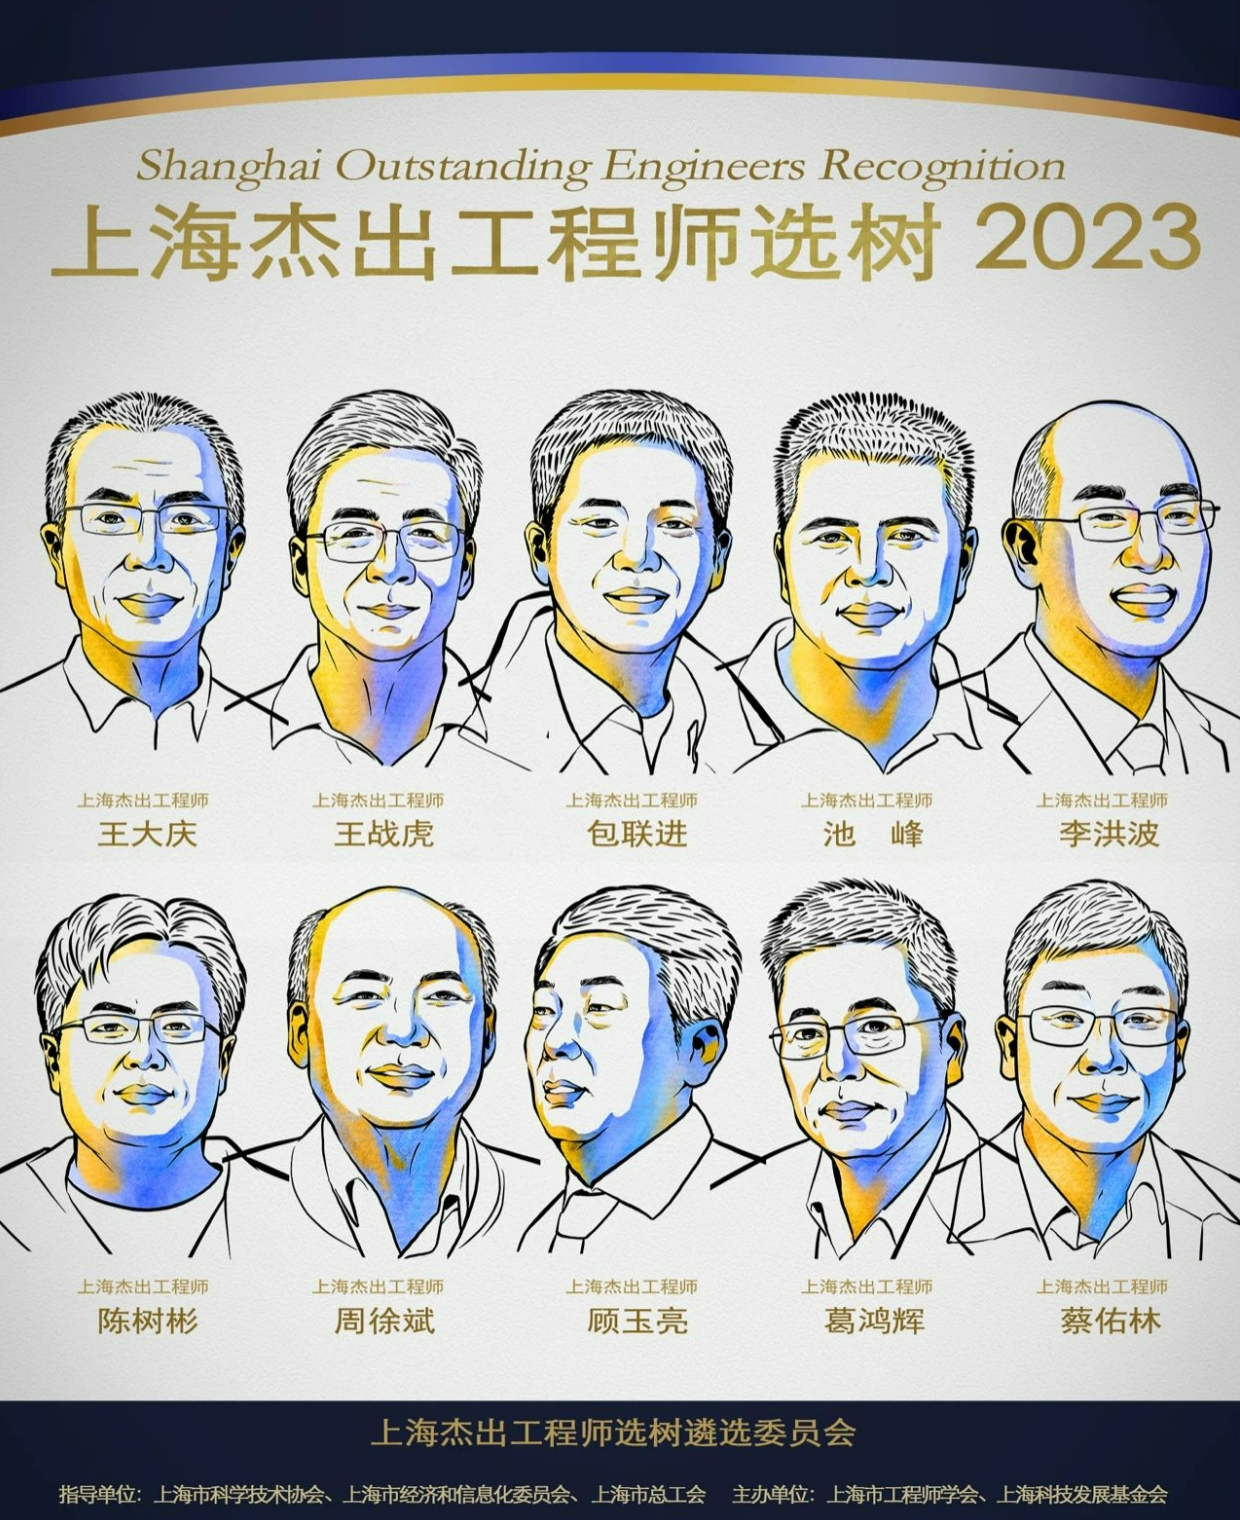 喜讯 | 2023年上海杰出工程师选树名单揭晓，池峰博士荣登榜单